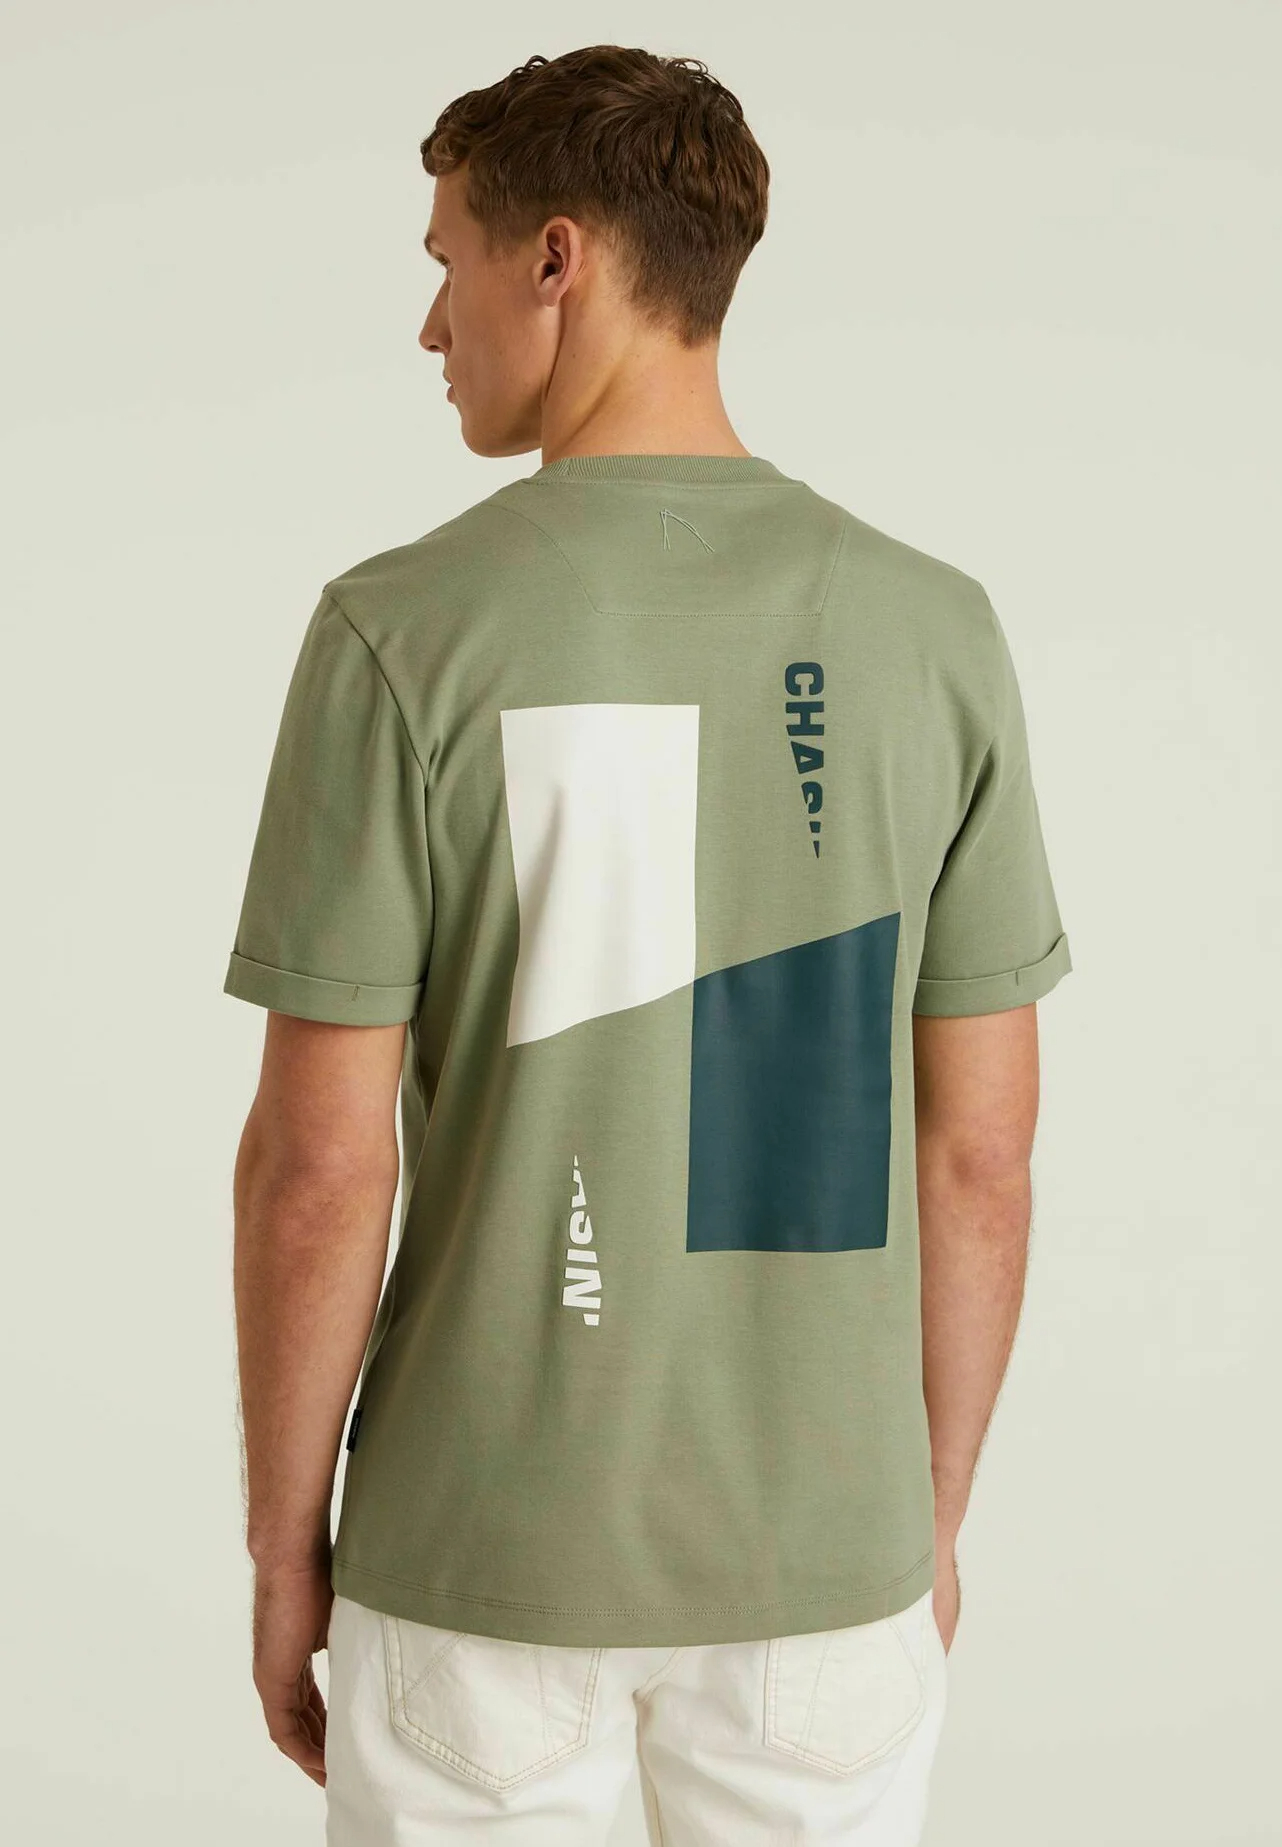 RECO - T-shirt imprimé - green